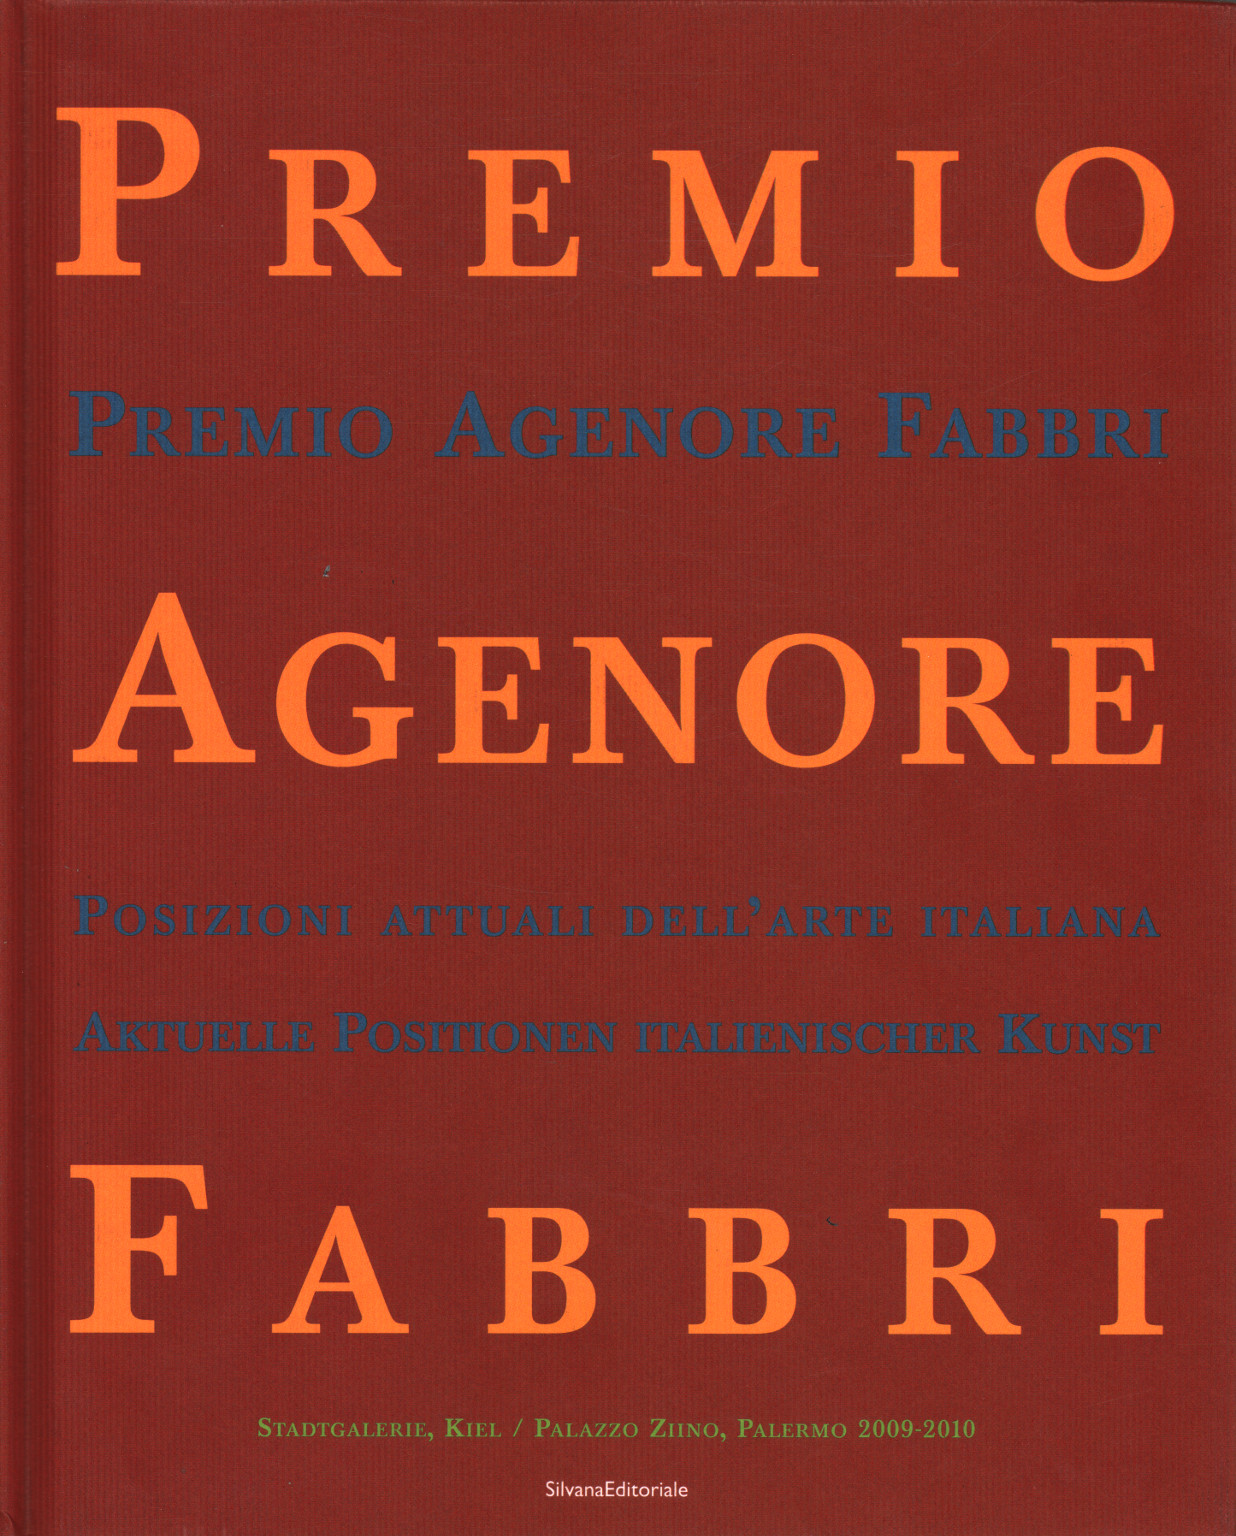 Premio Agenore Fabbri IV, s.a.